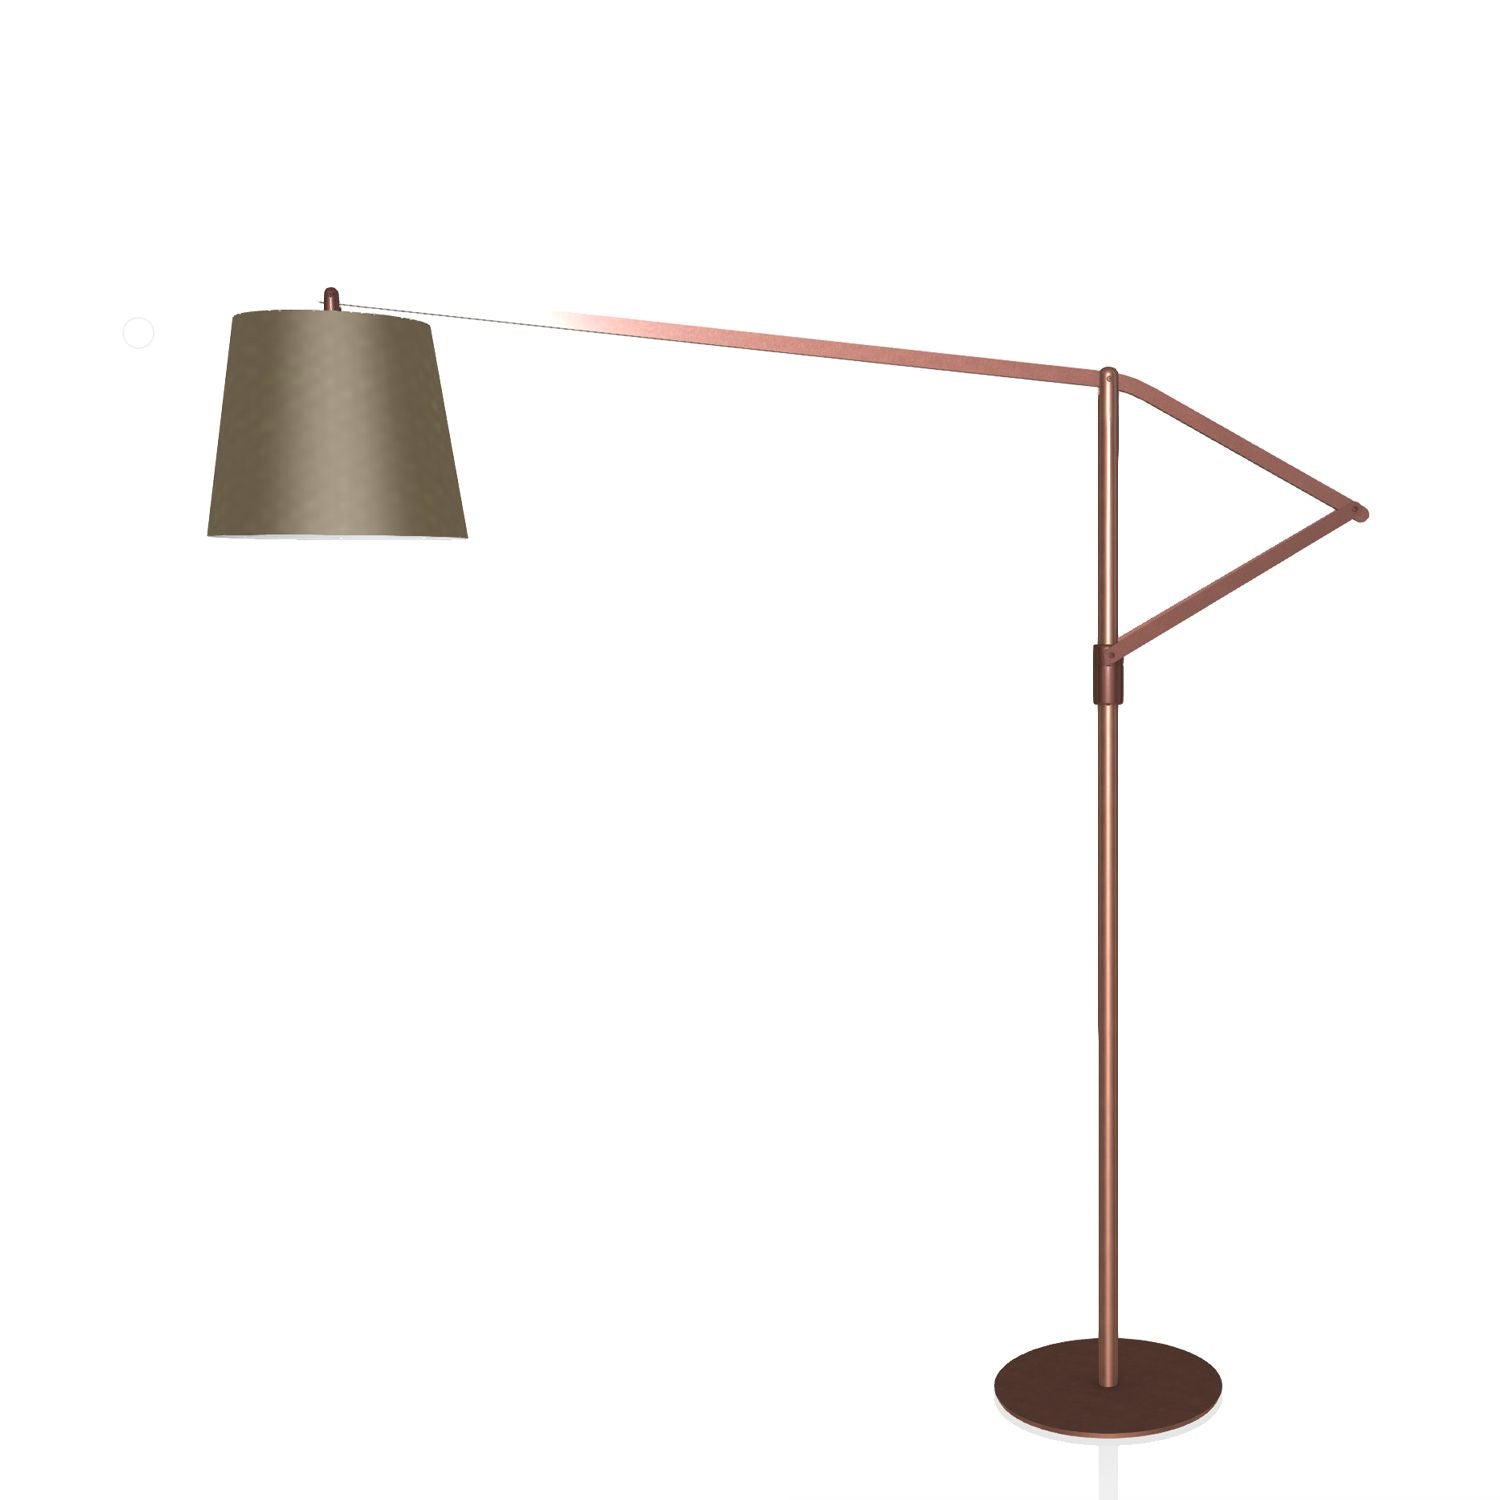  Lamp By Bontempi Casa